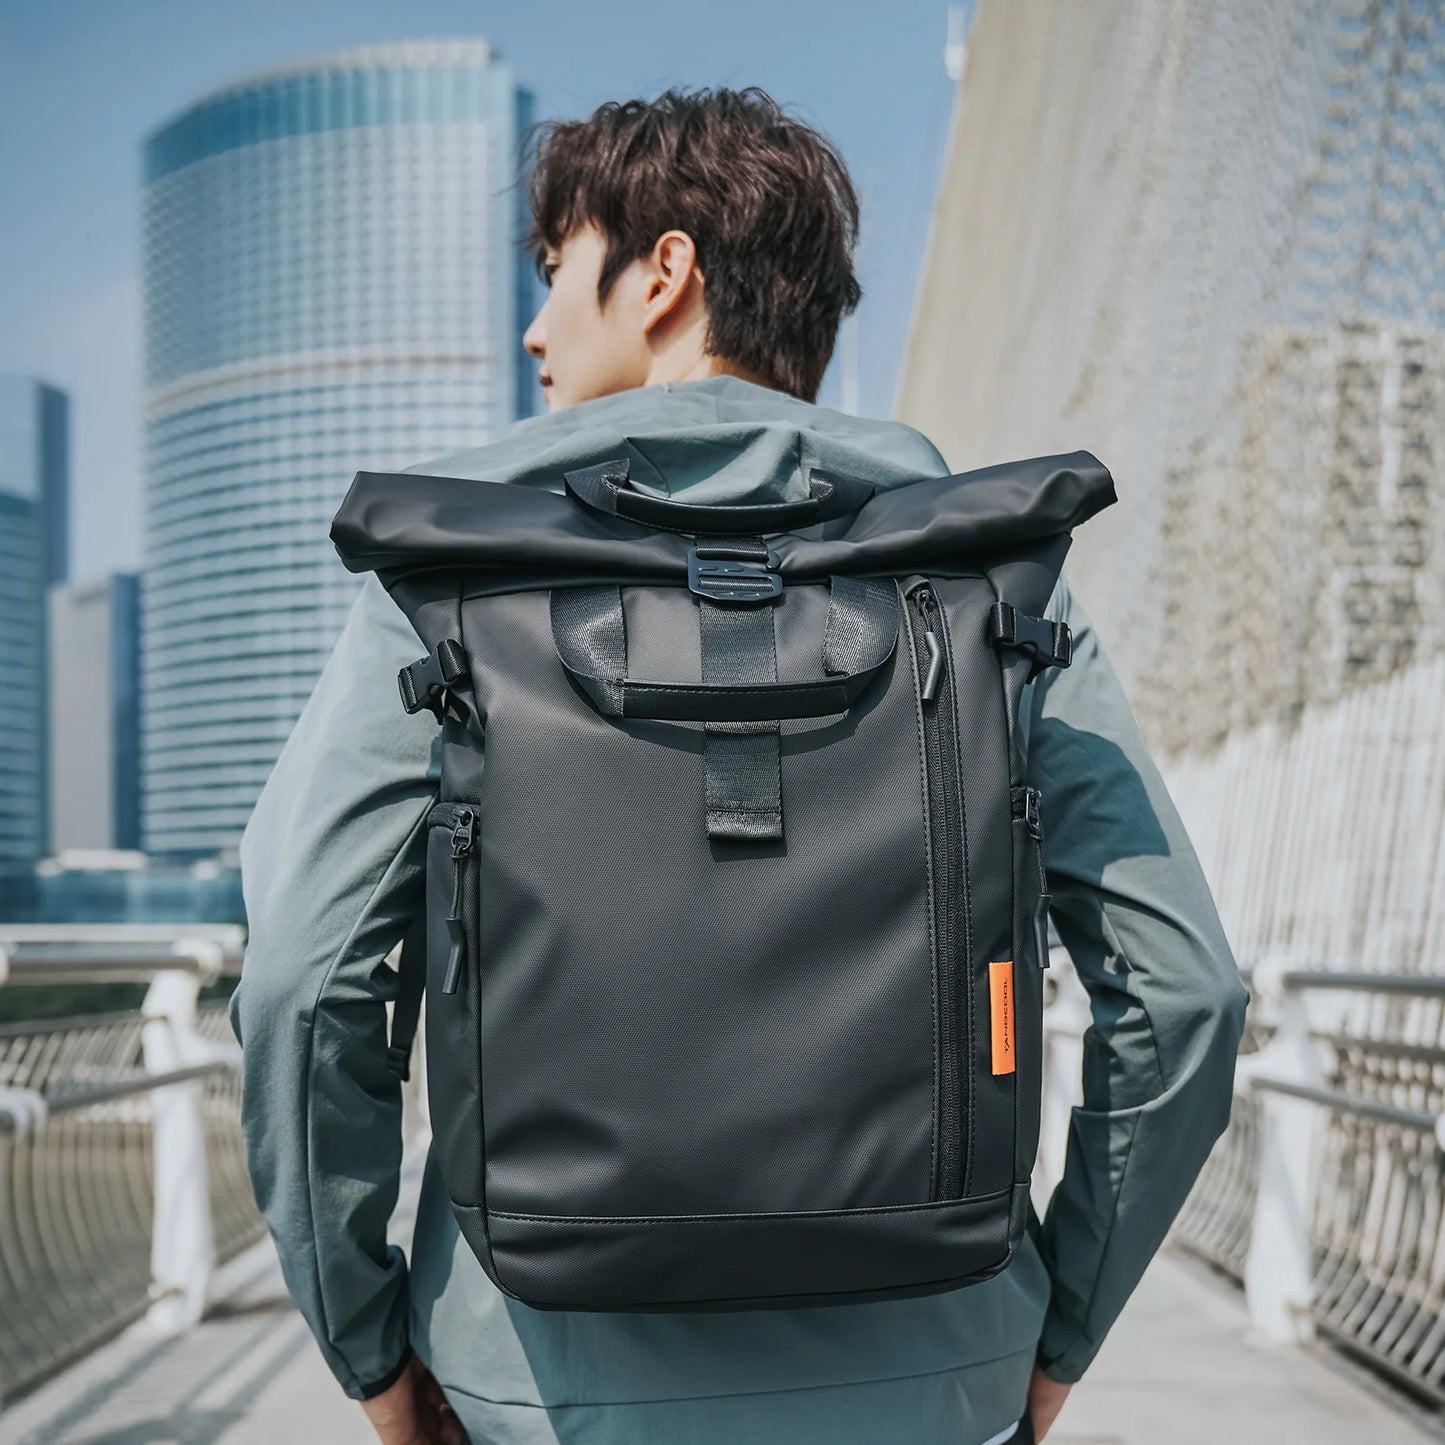 Tangcool Men Large Capacity 15.6" Laptop Backpack Multifunction Roll Top Travel Bag For Man Waterproof Urban School Backpacks